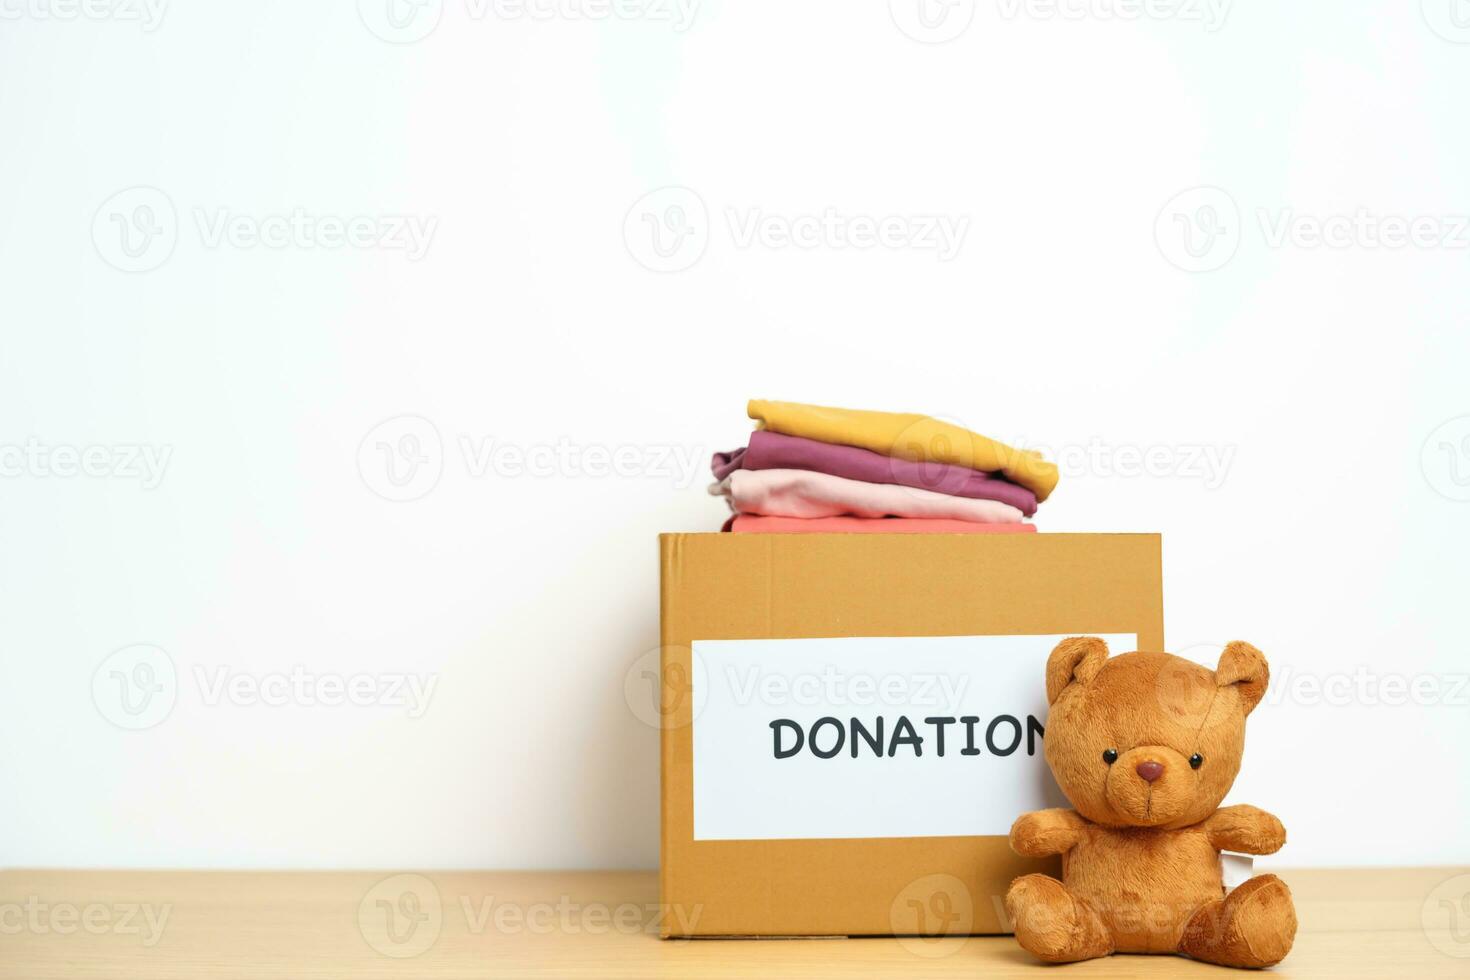 niño donación, caridad, voluntario, dando y entrega concepto. oso muñeca y ropa con donación caja a hogar para apoyo y ayuda pobre, refugiado y Vagabundo gente. Copiar espacio para texto foto